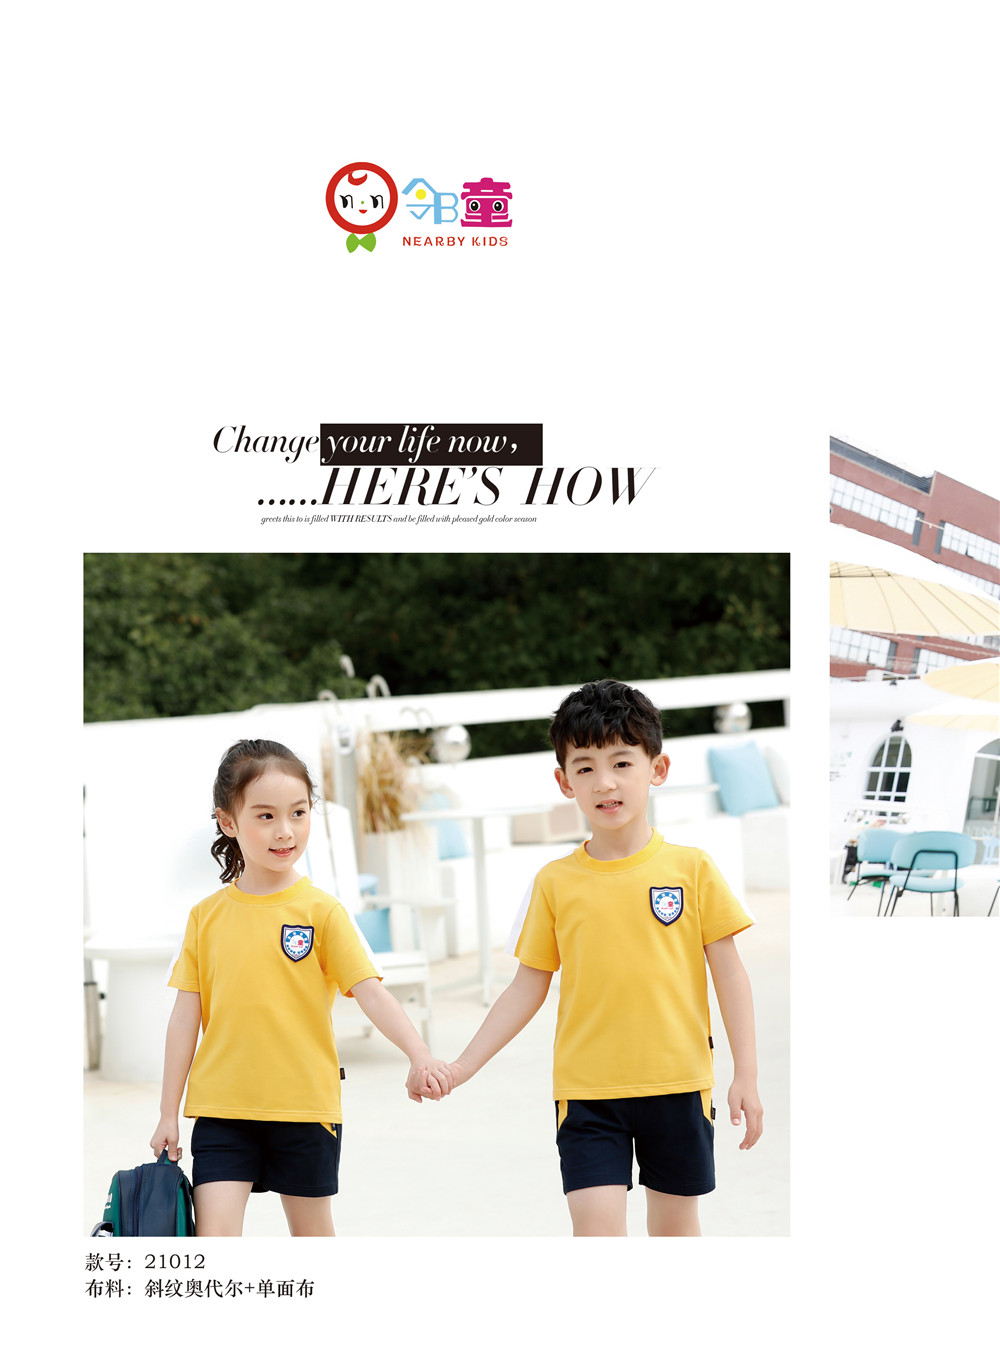 黄色经典幼儿园园服运动套装